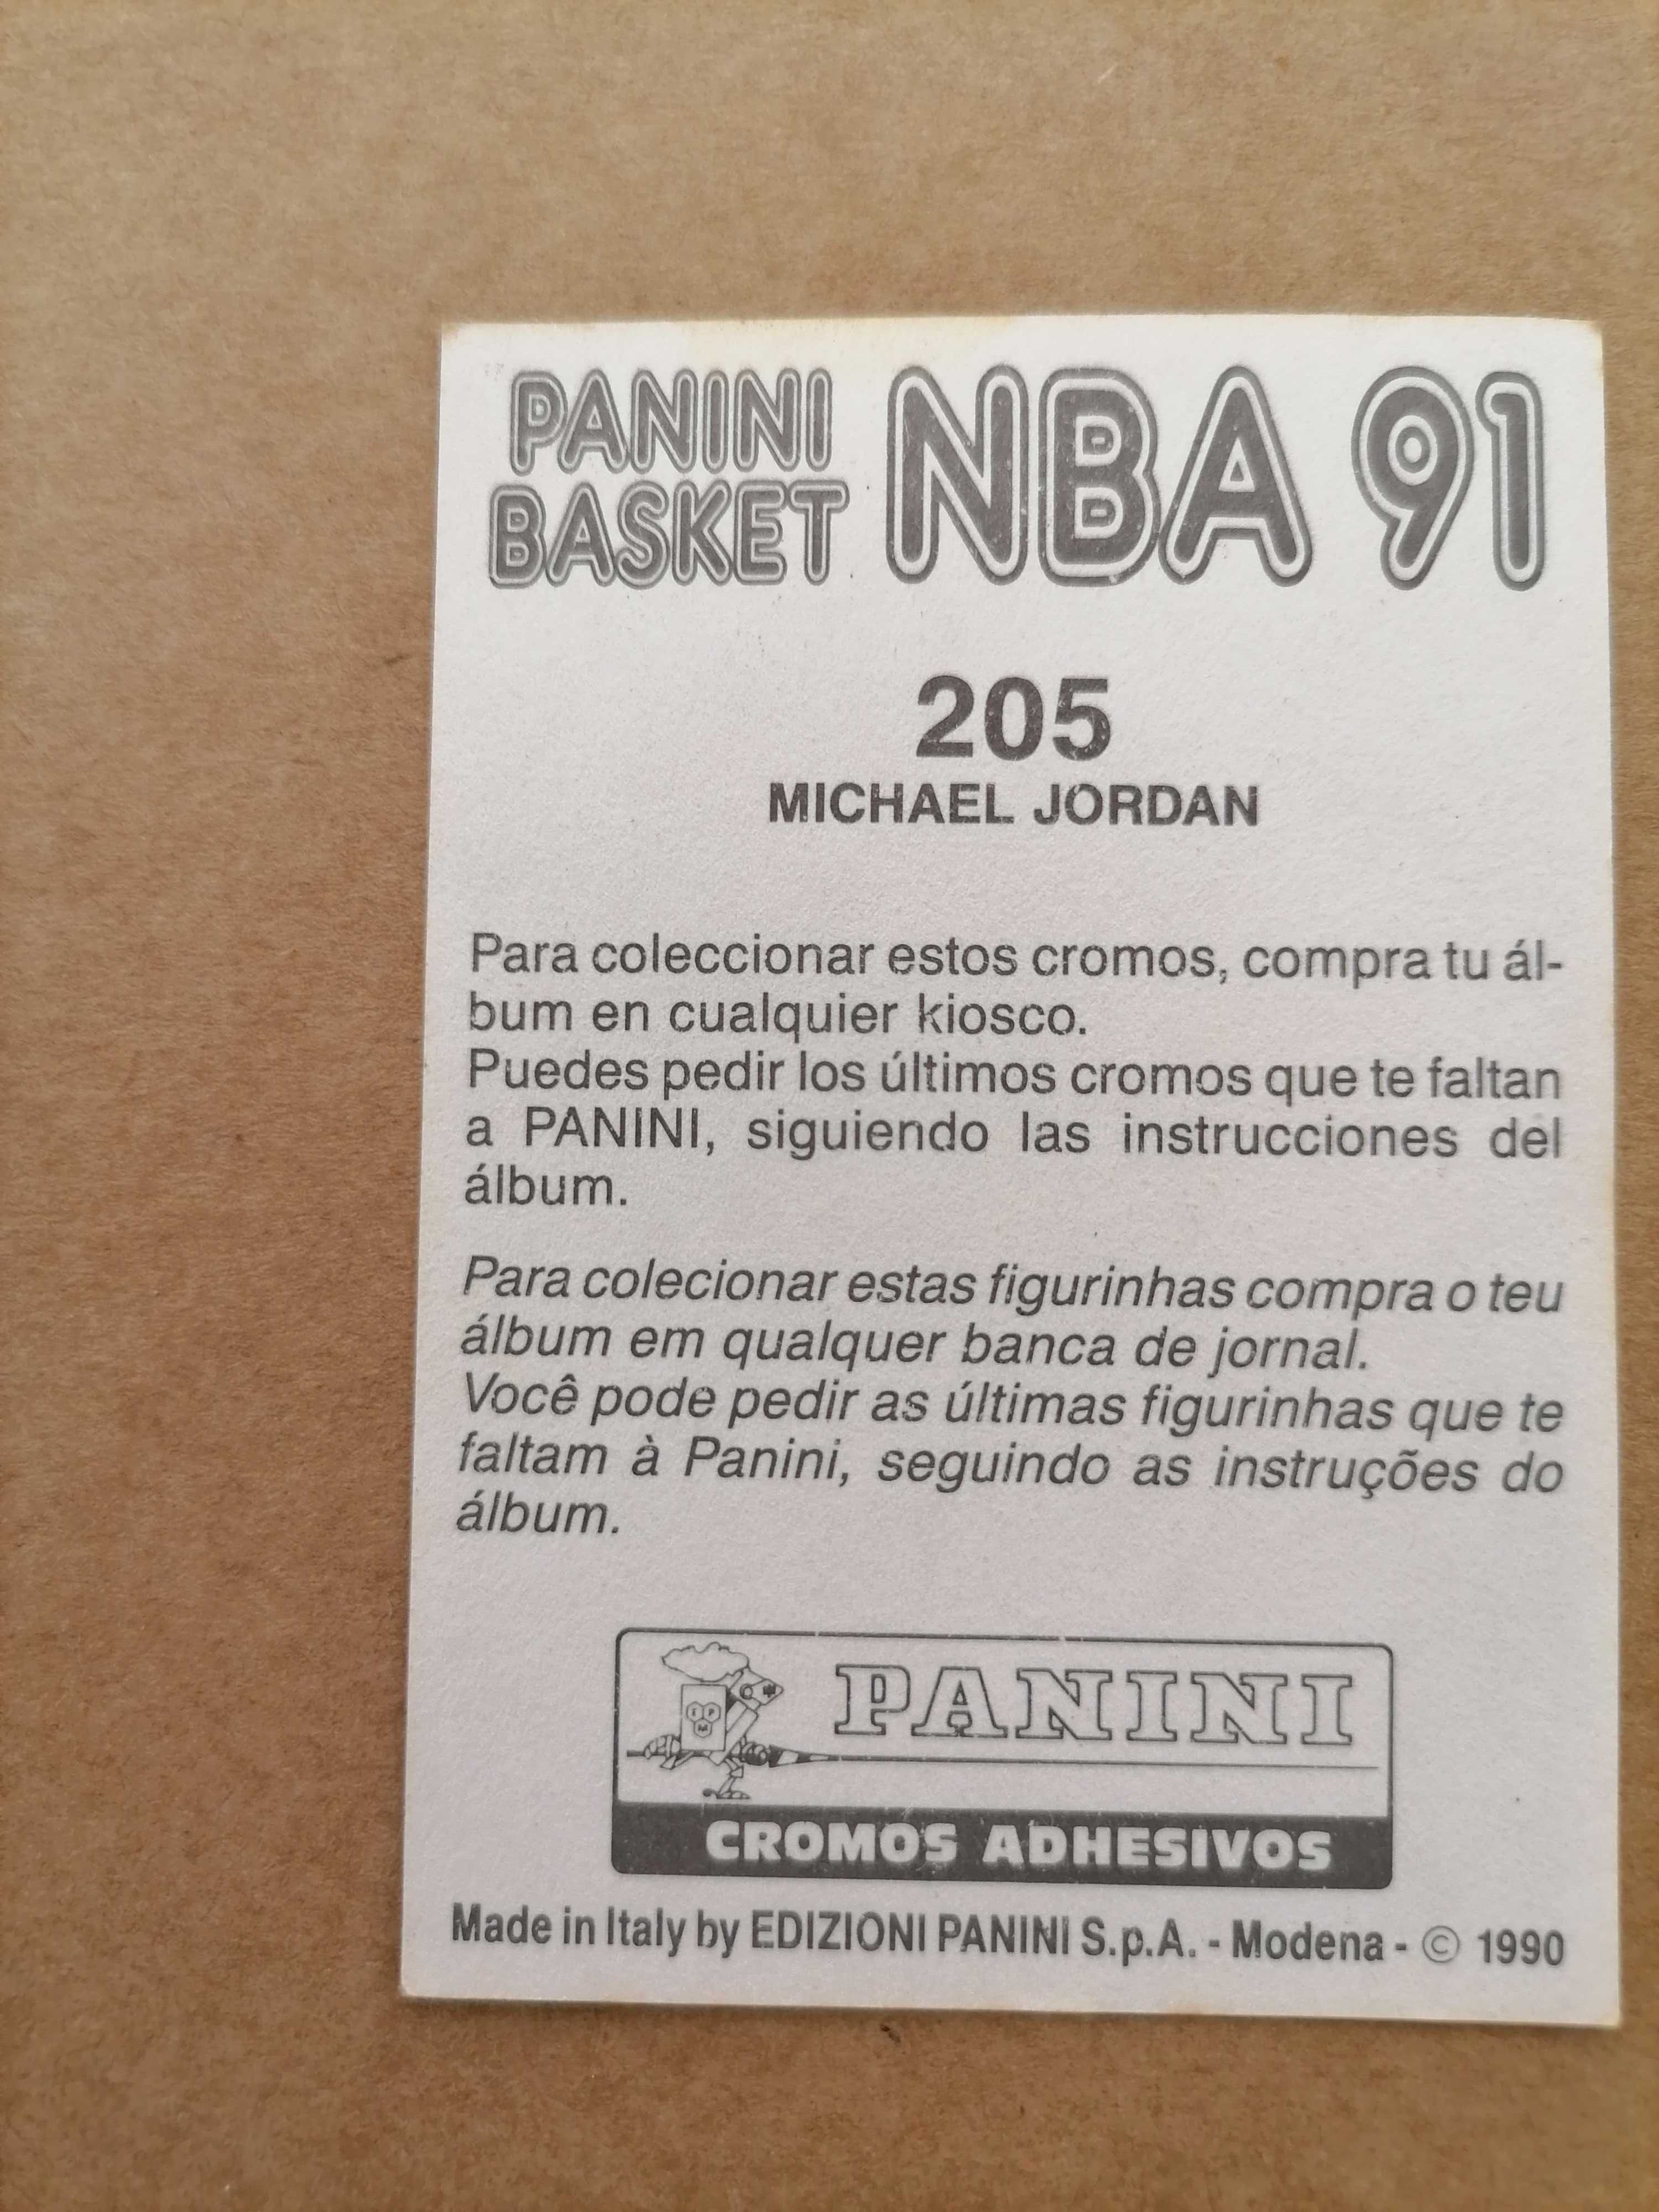 Cromo NBA 91 MICHAEL JORDAN - Nº 205 PANINI